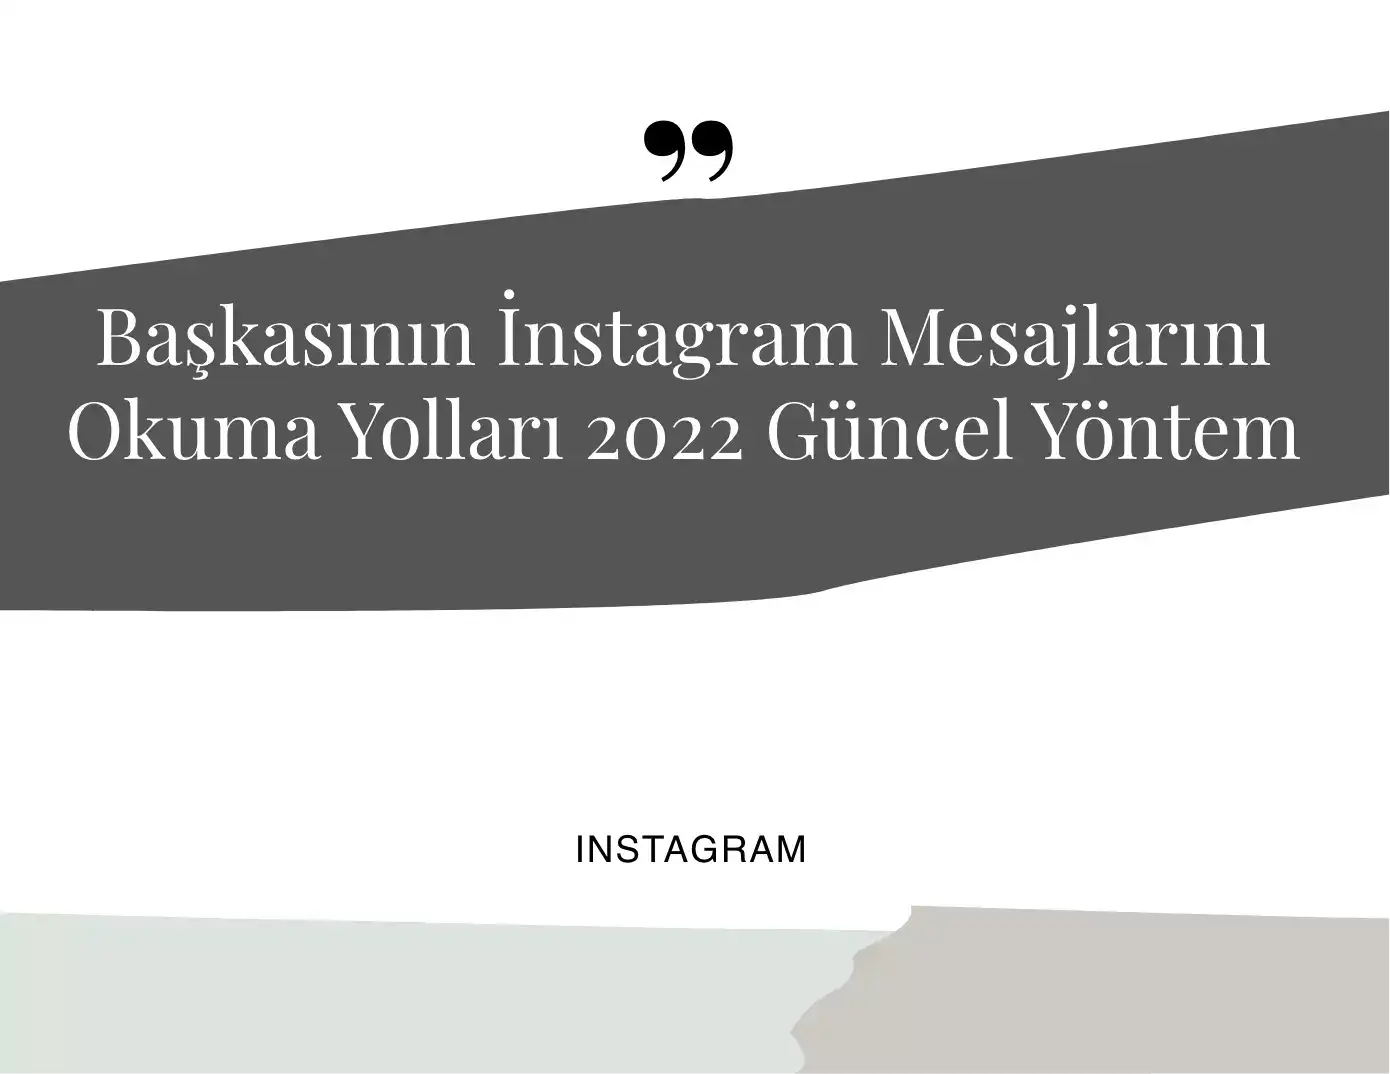 baskasinin-instagram-mesajlarini-okuma